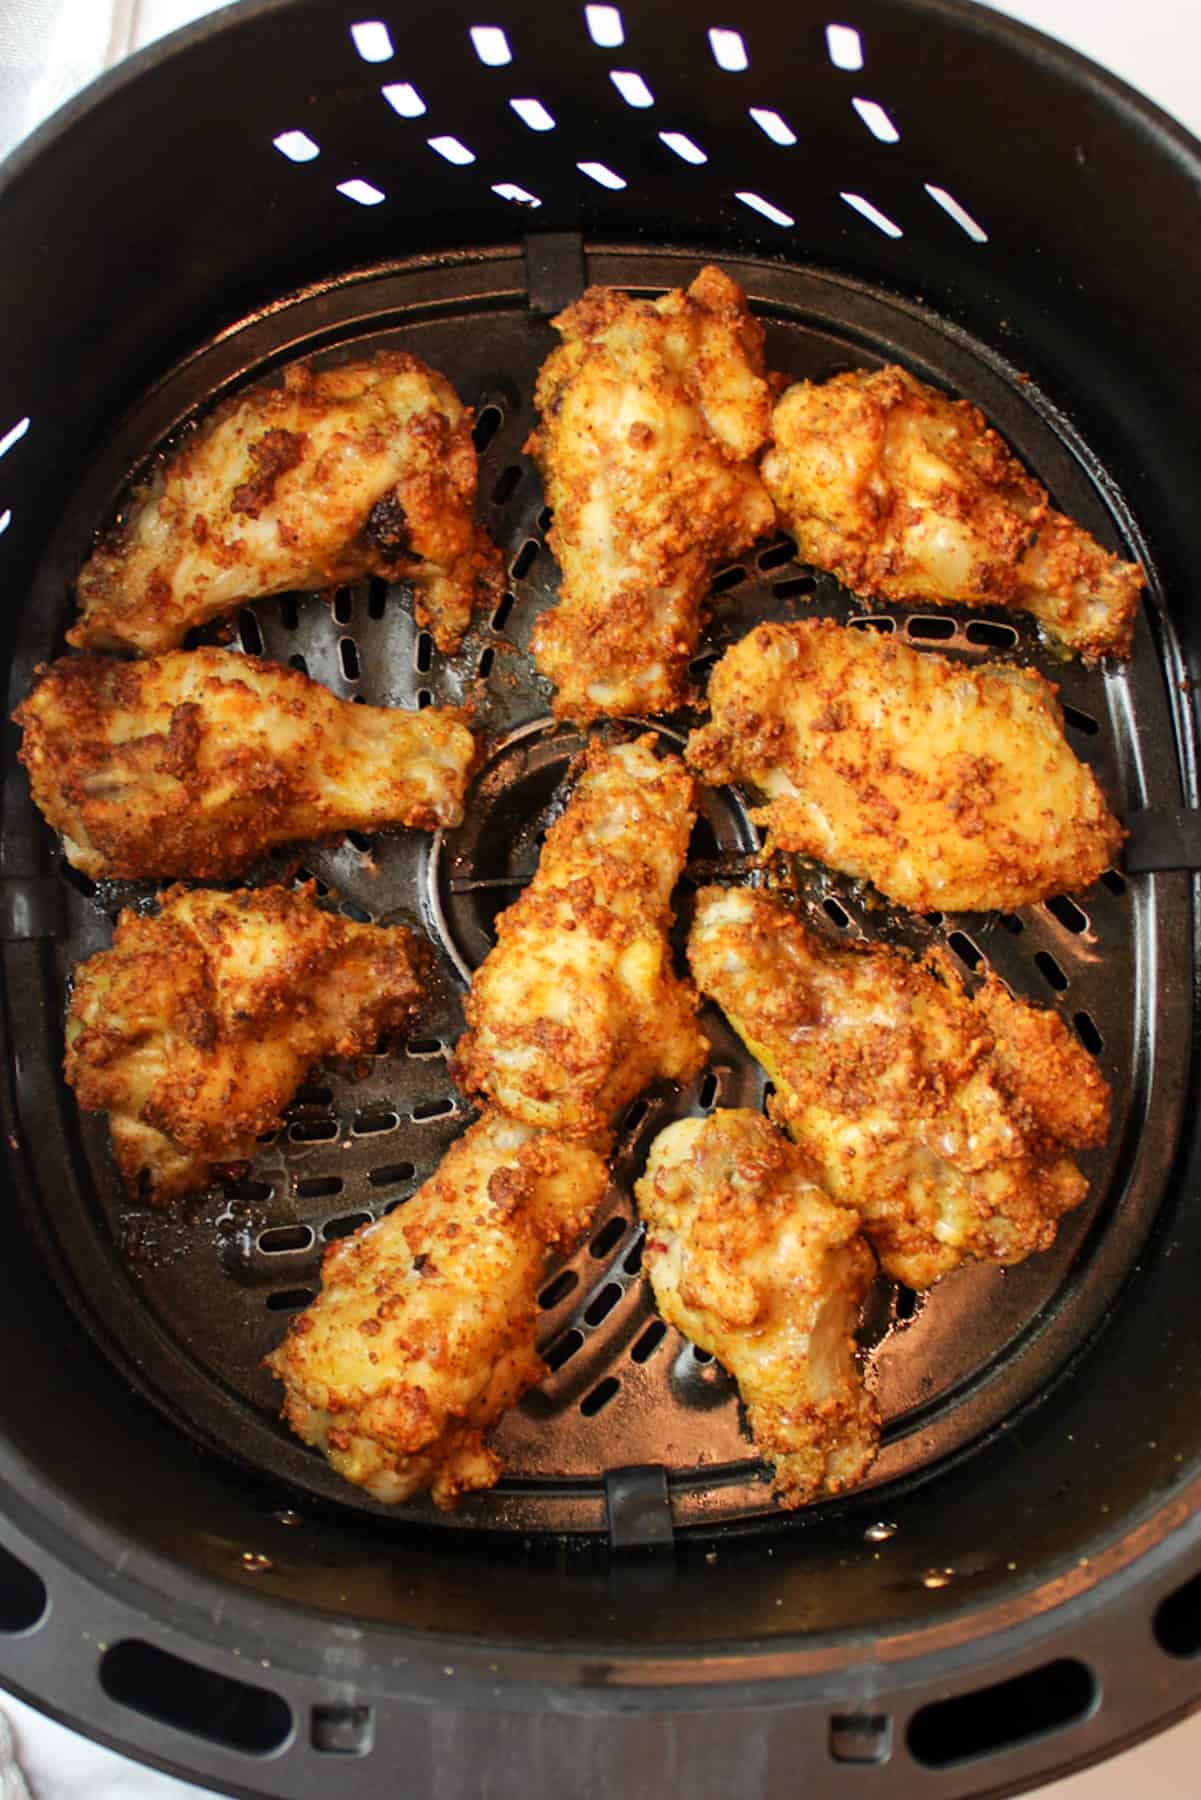 crispy chicken wings in an air fryer basket.